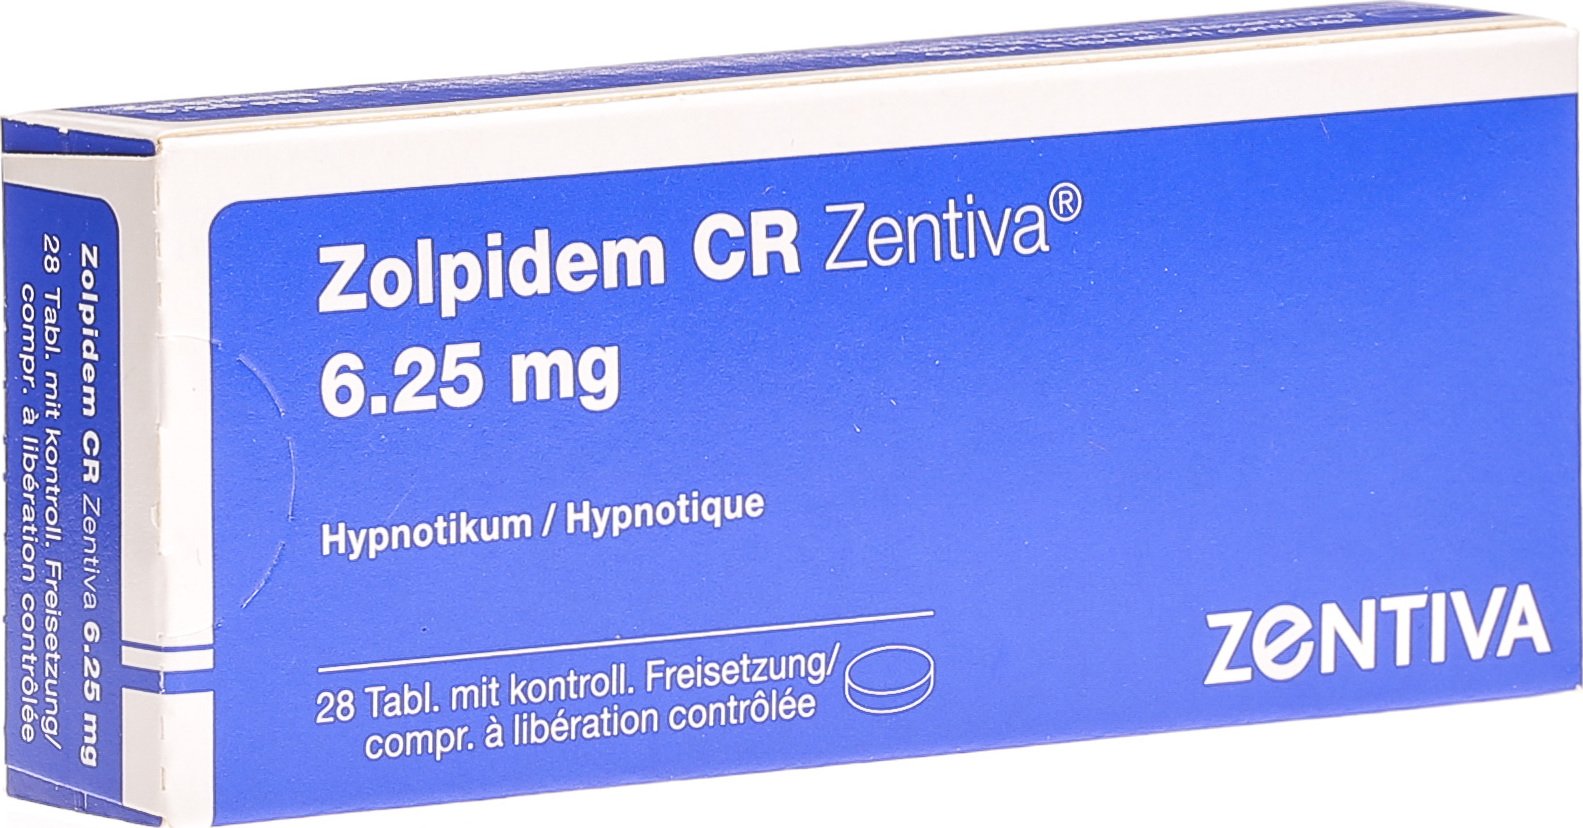 Zolpidem Cr Zentiva Retard Tabletten mg Stück in der Adler Apotheke